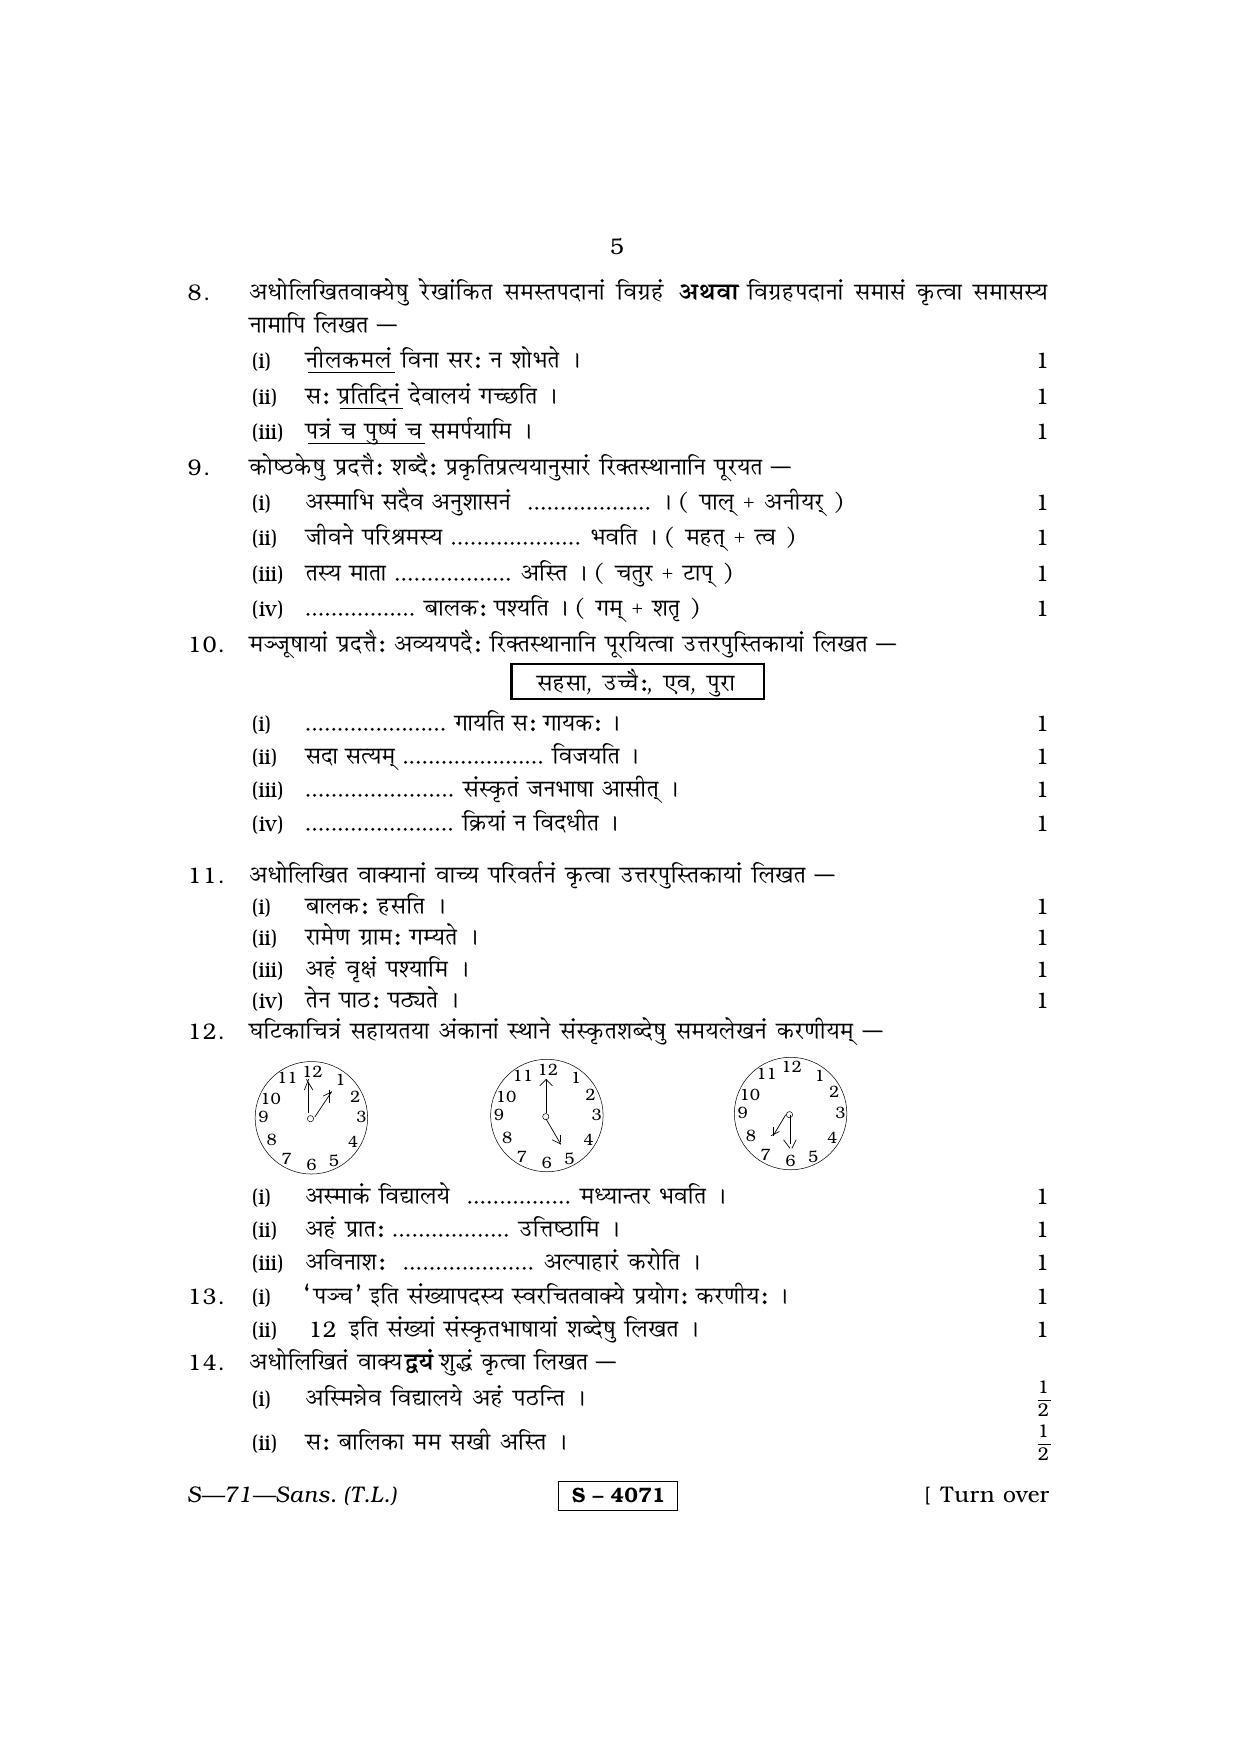 RBSE Class 10 Sanskrit (T.L.) 2015 Question Paper - Page 5